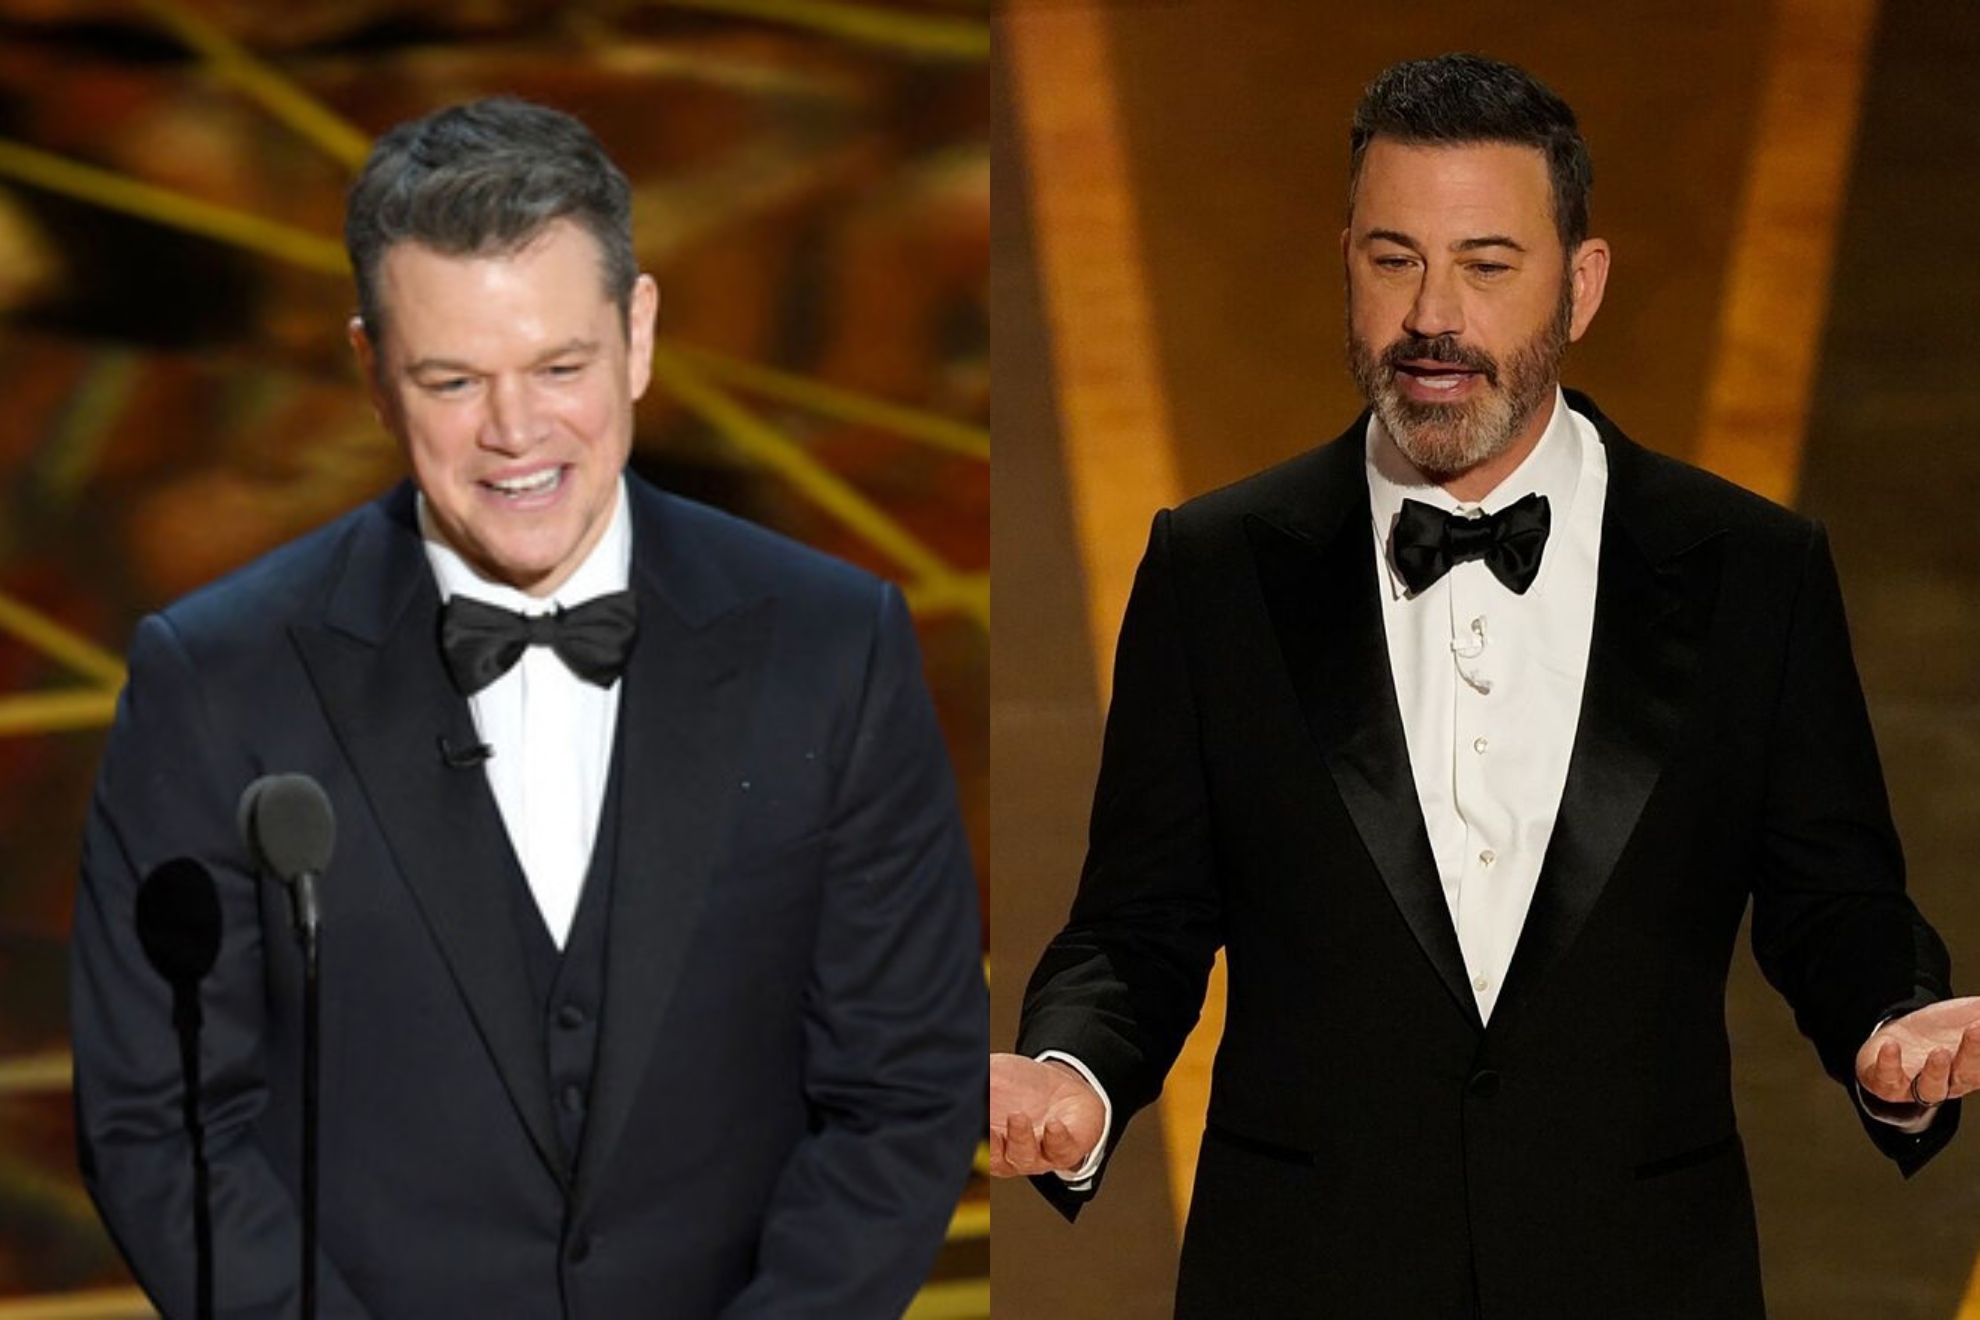 Matt Damon continúa su guerra con el "imbécil" de Jimmy Kimmel: "Es un ser humano terrible"